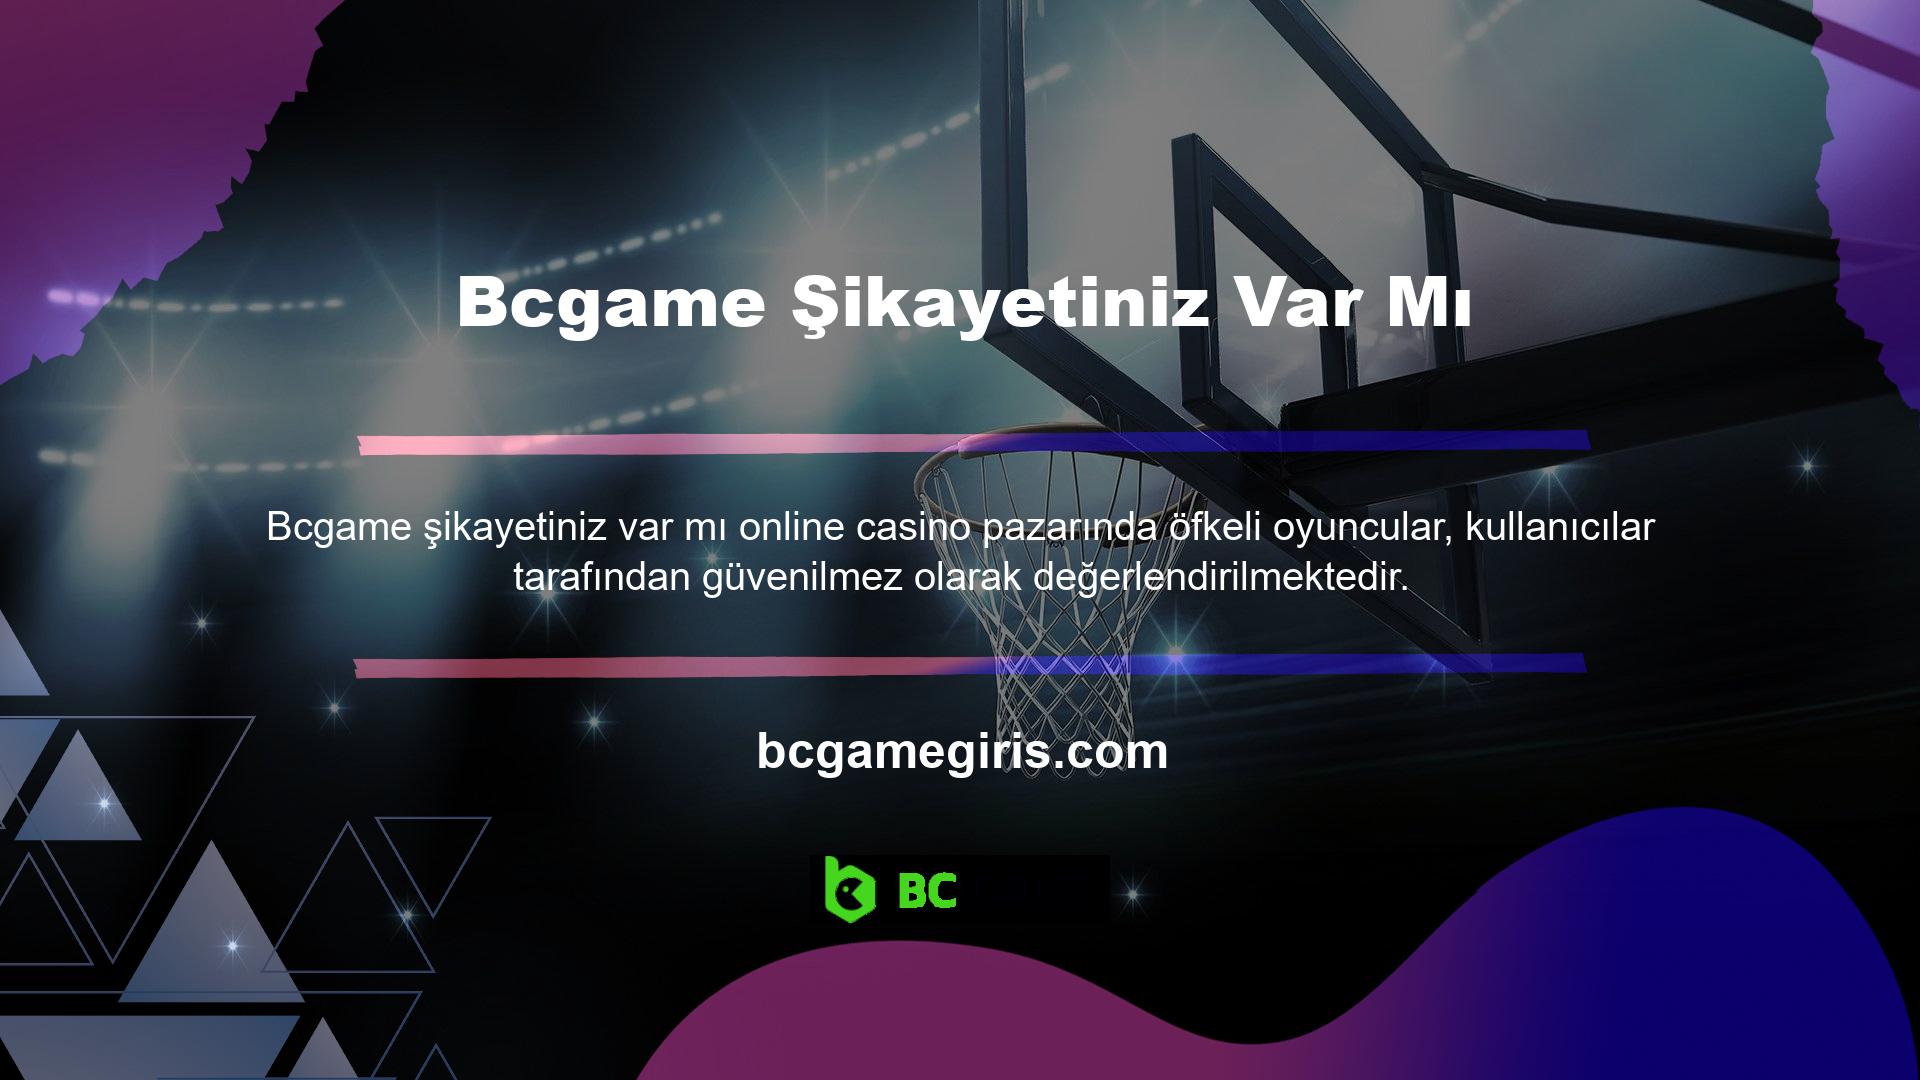 Bcgame web sitesi ile ilgili bir şikayetiniz mi var? Biz üyeleri bilgilendiren ve sorunları çözen gerçek zamanlı bir destek hizmetiyiz